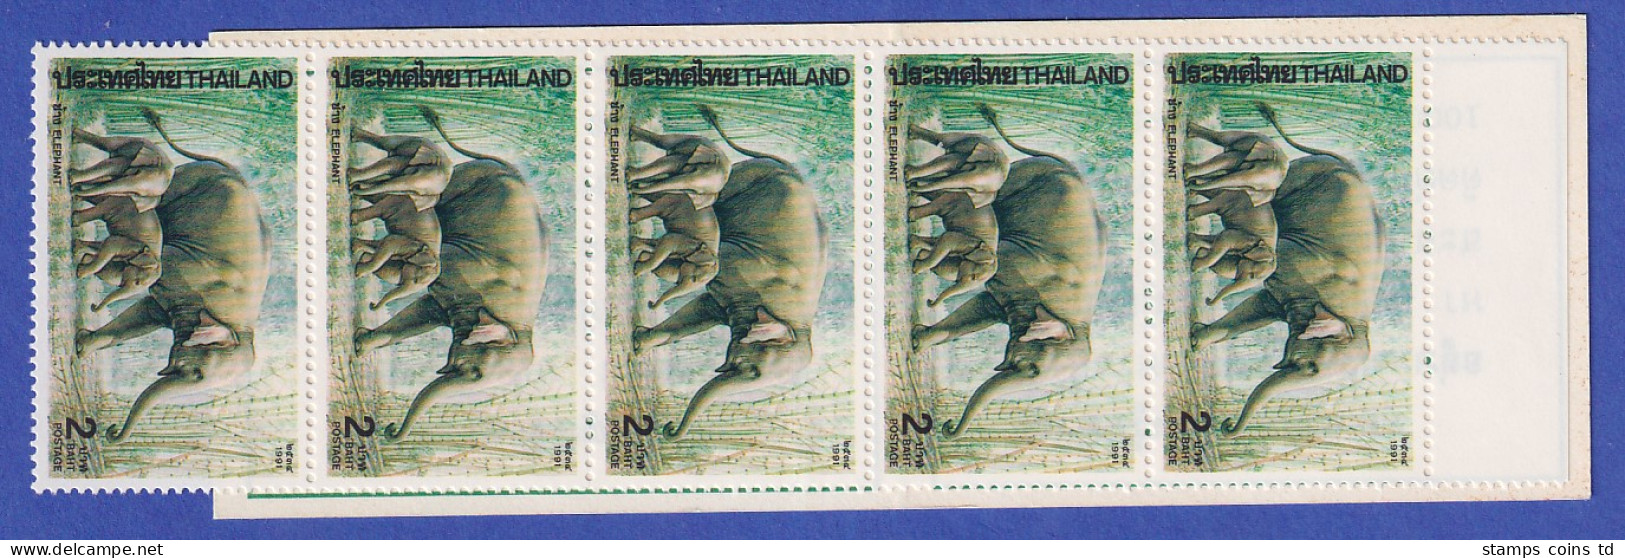 Thailand 1991 Indischer Elefant Mi.-Nr. 1438 Markenheftchen Postfrisch ** / MNH - Thailand